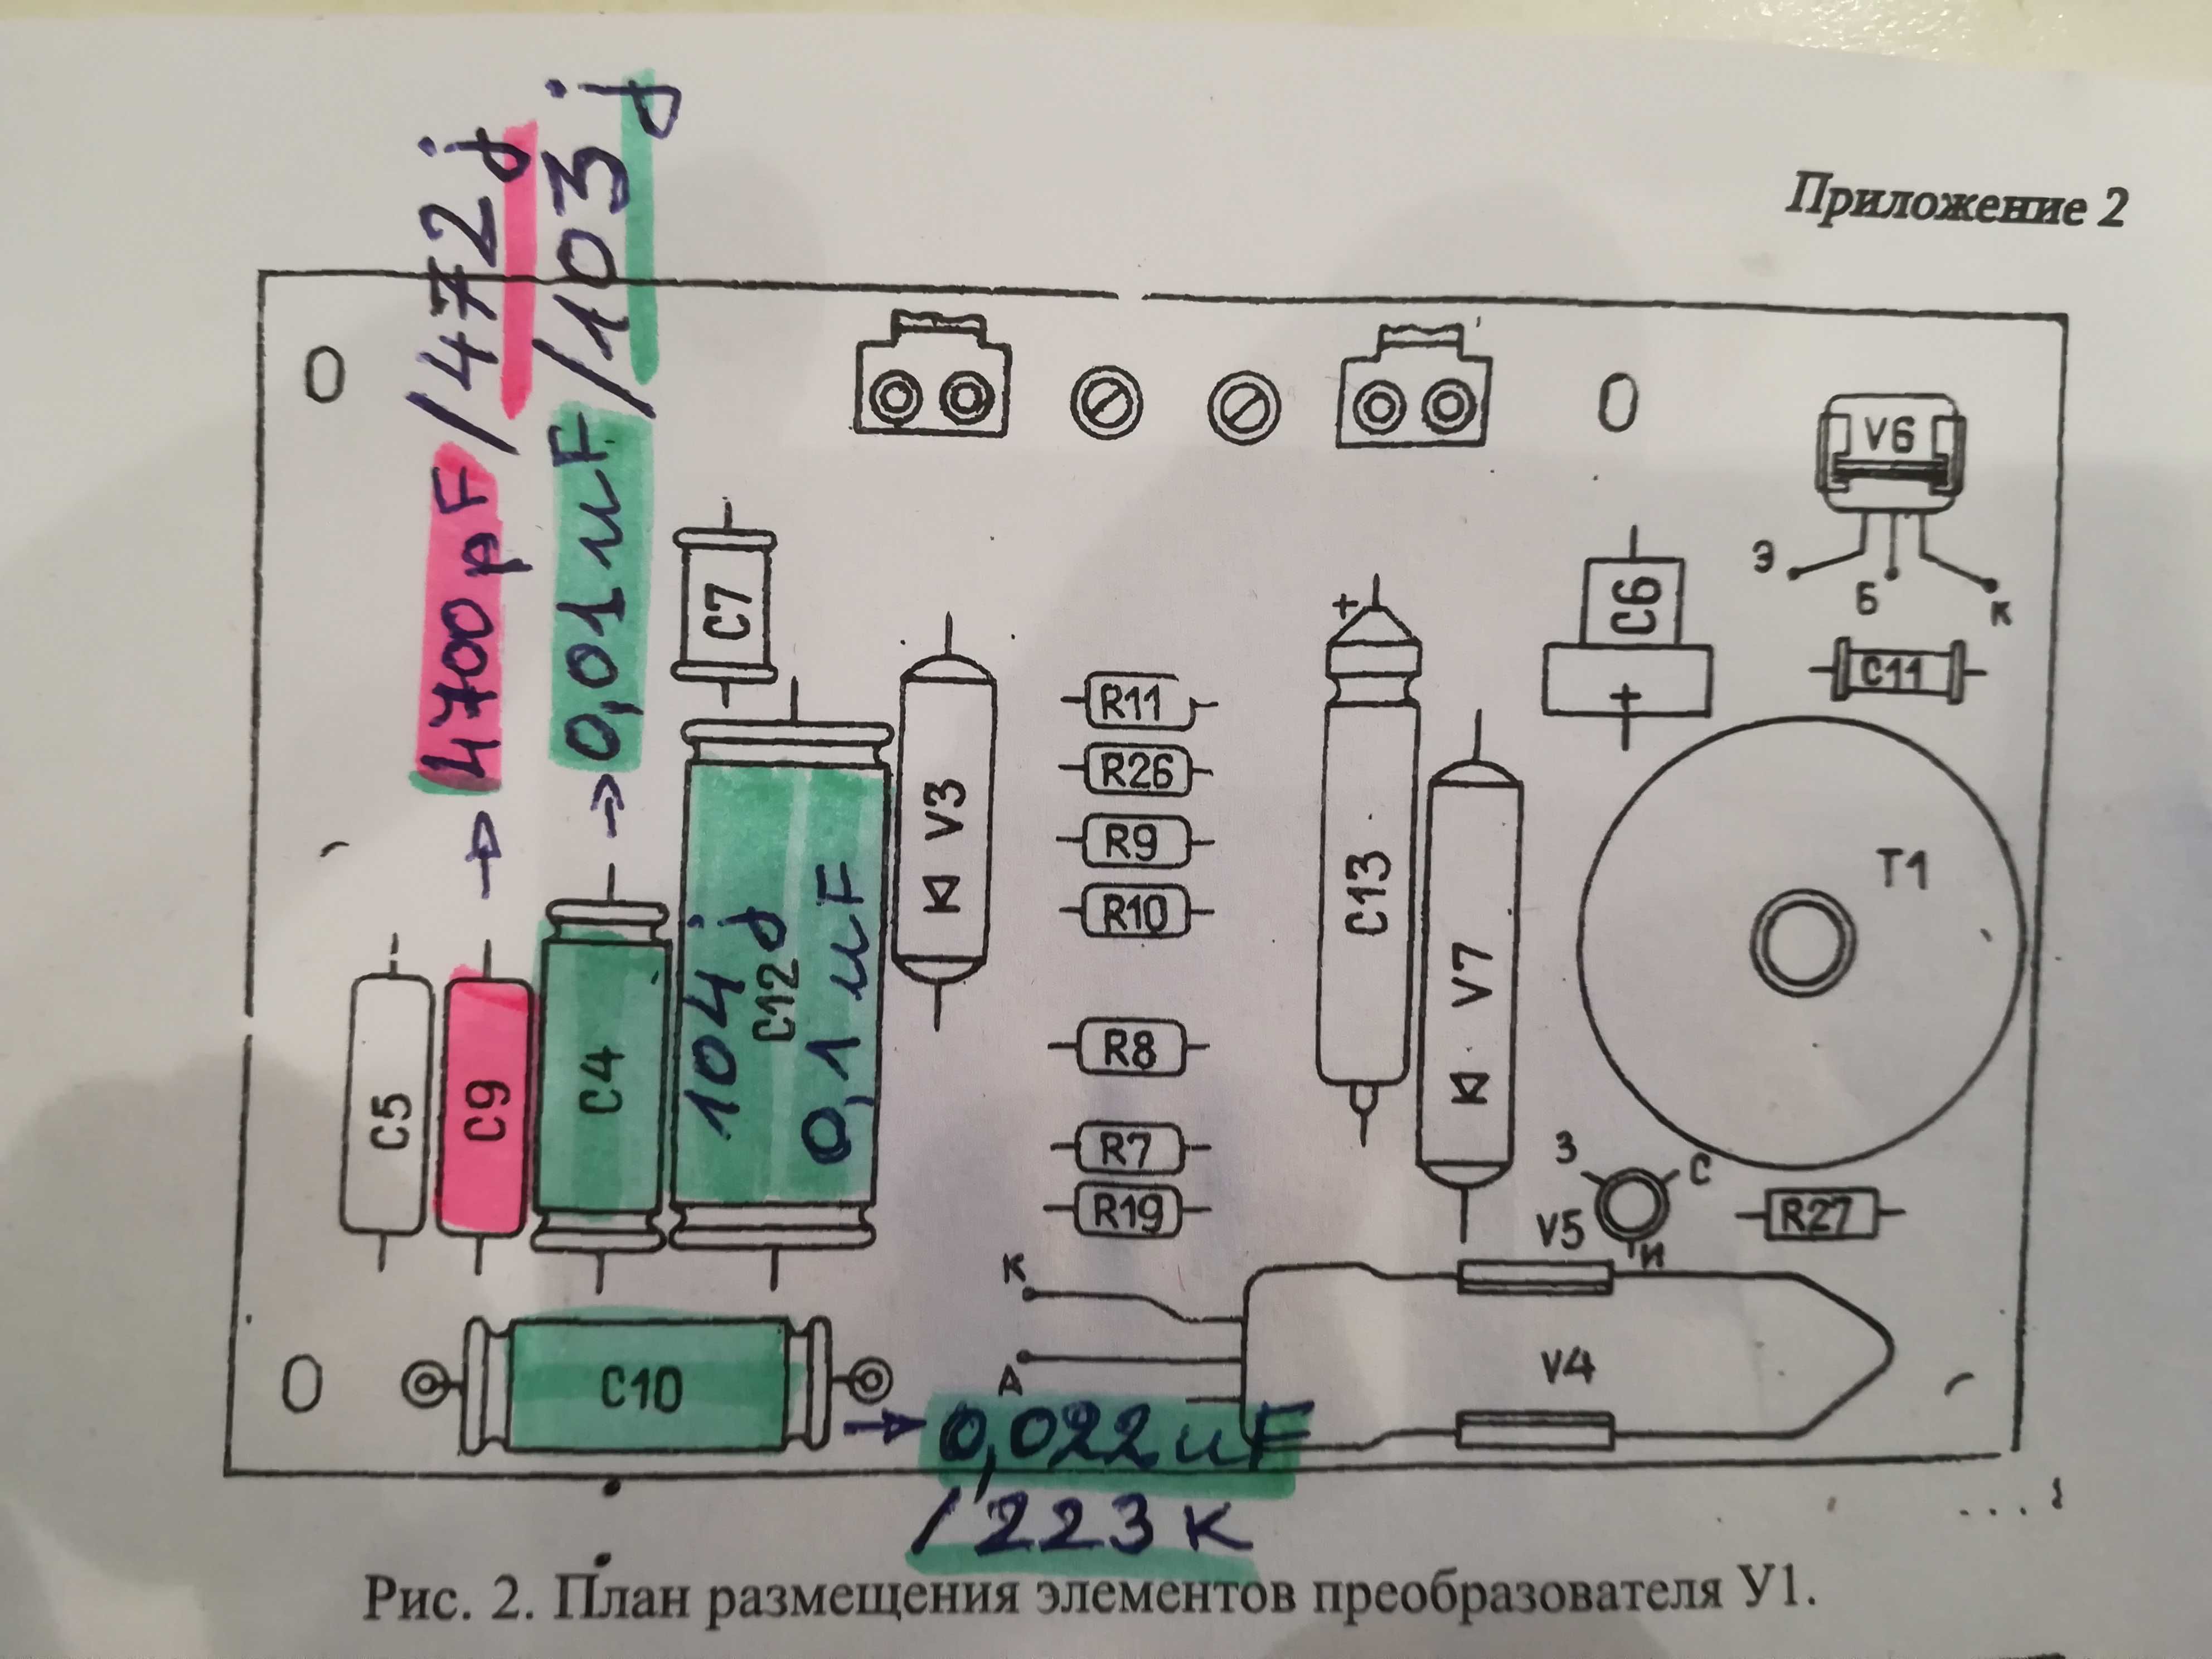 Ремонтен комплект кондензатори за дозиметър /гайгер/ ДП-5В